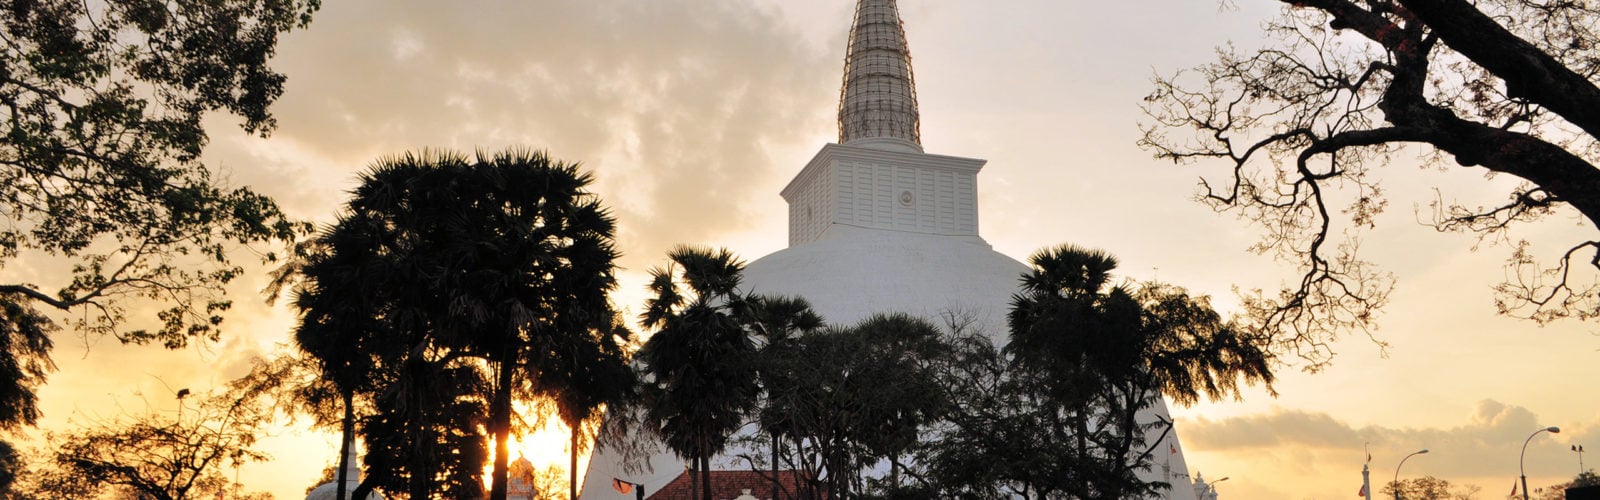 polonnaruwa-stupa-sri-lanka